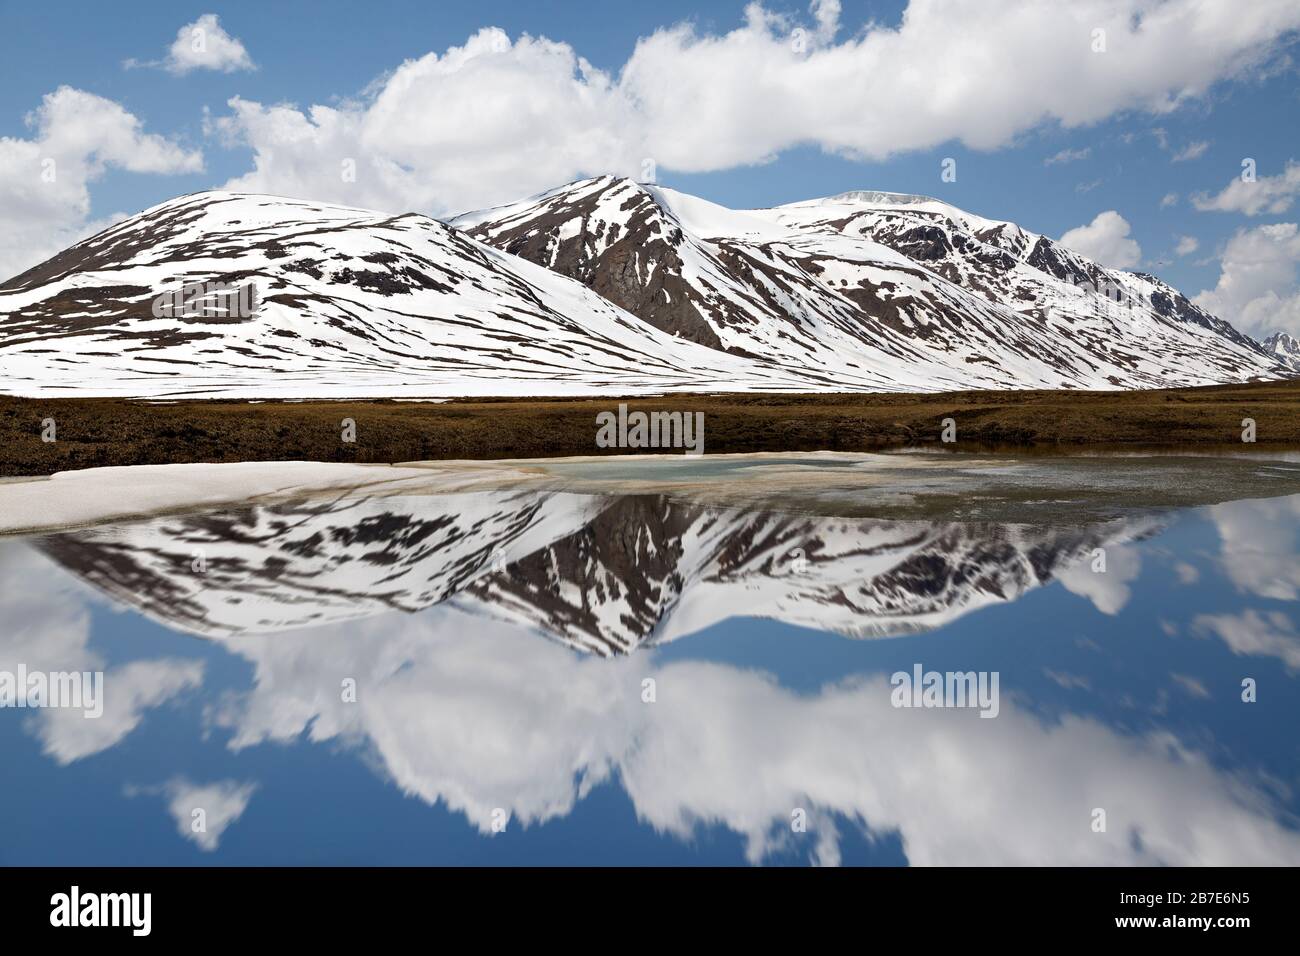 Lac de montagne au sommet des montagnes de Barskaun, avec des réflexions dans l'eau au Kirghizstan Banque D'Images